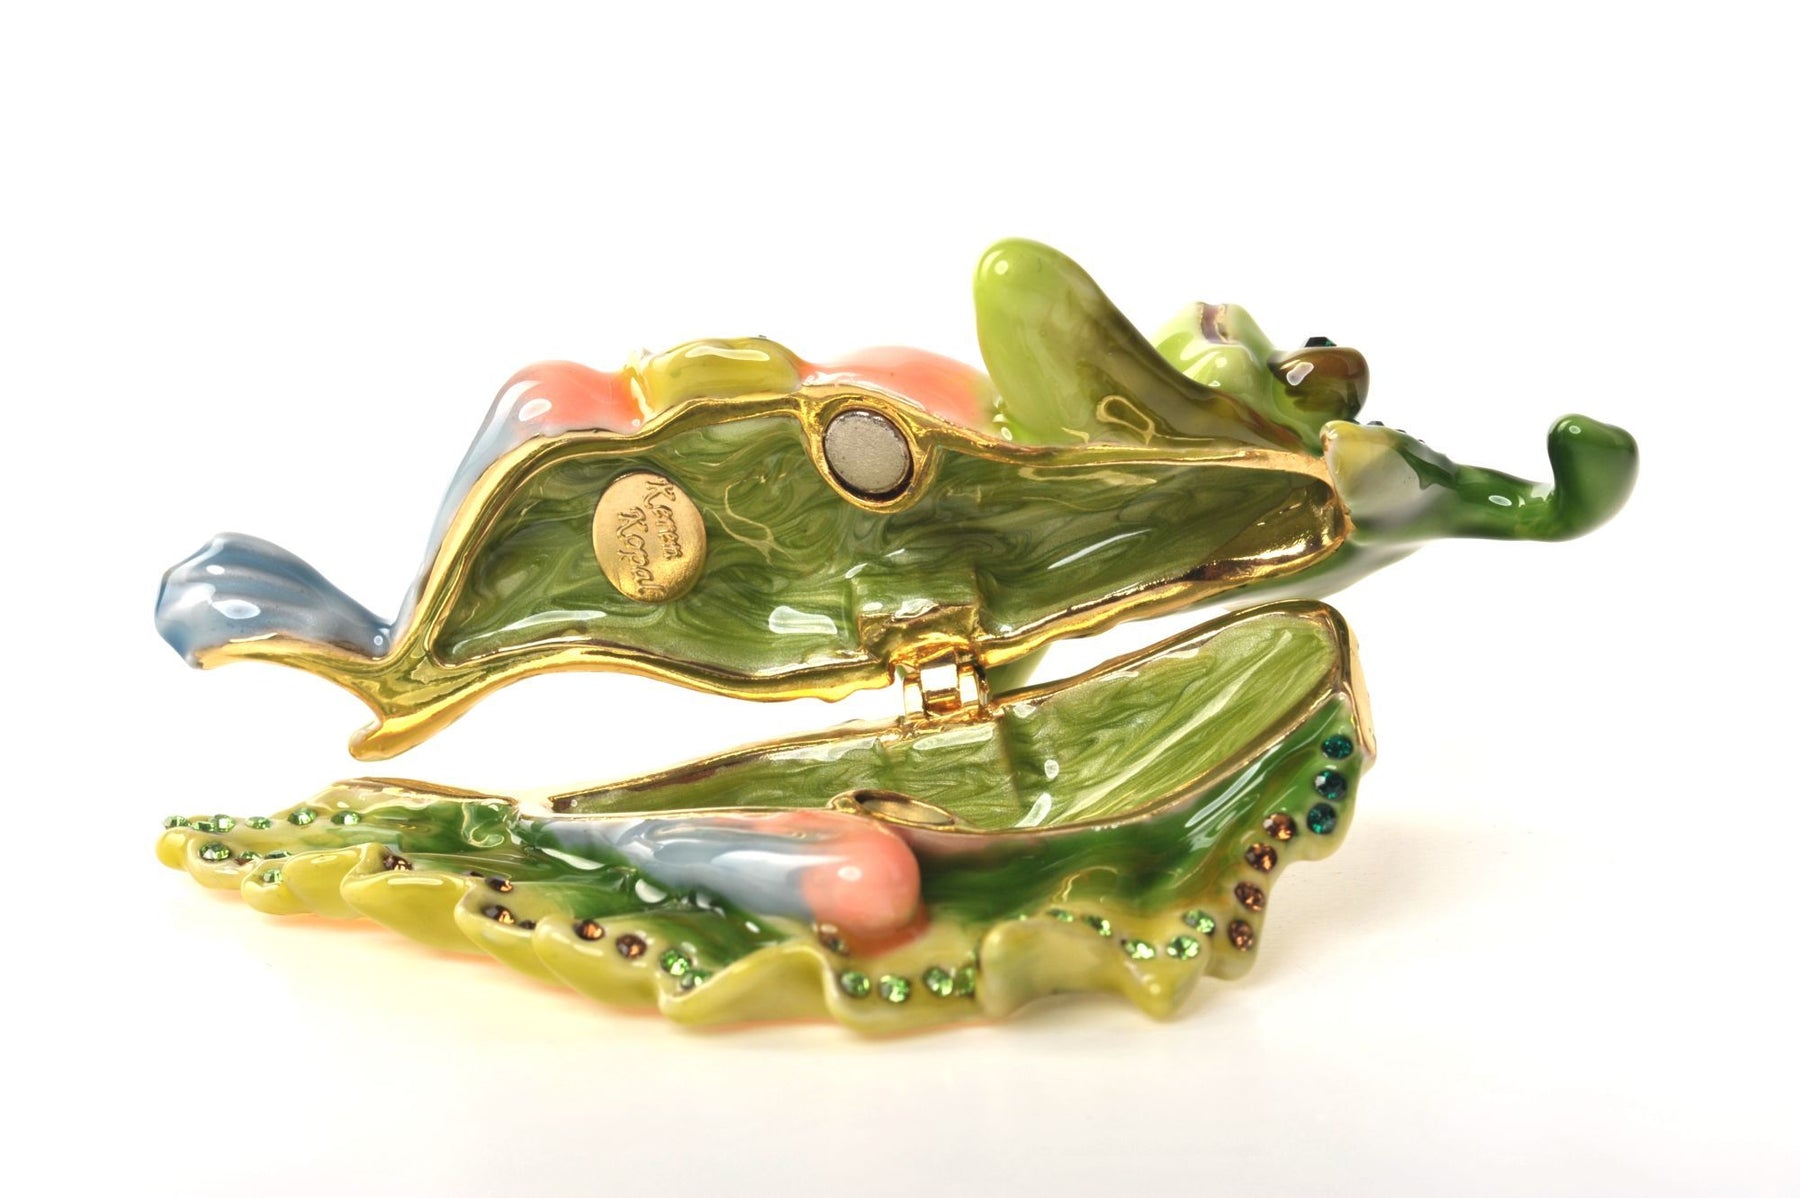 Keren Kopal Frog on a Leaf  49.50